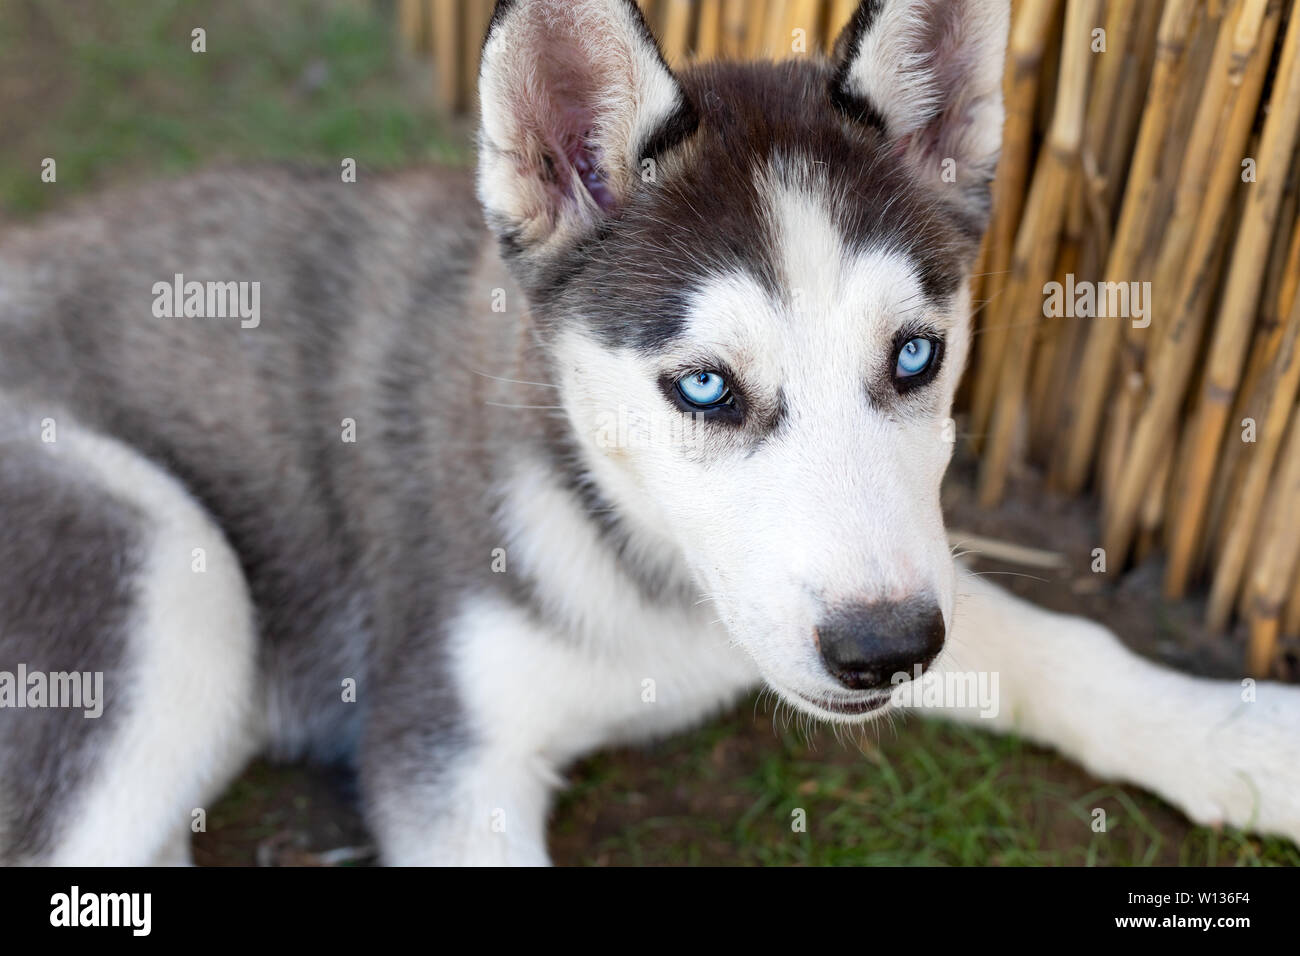 Piccolo grazioso cucciolo husky seduto a terra - cane di razza pura Foto Stock